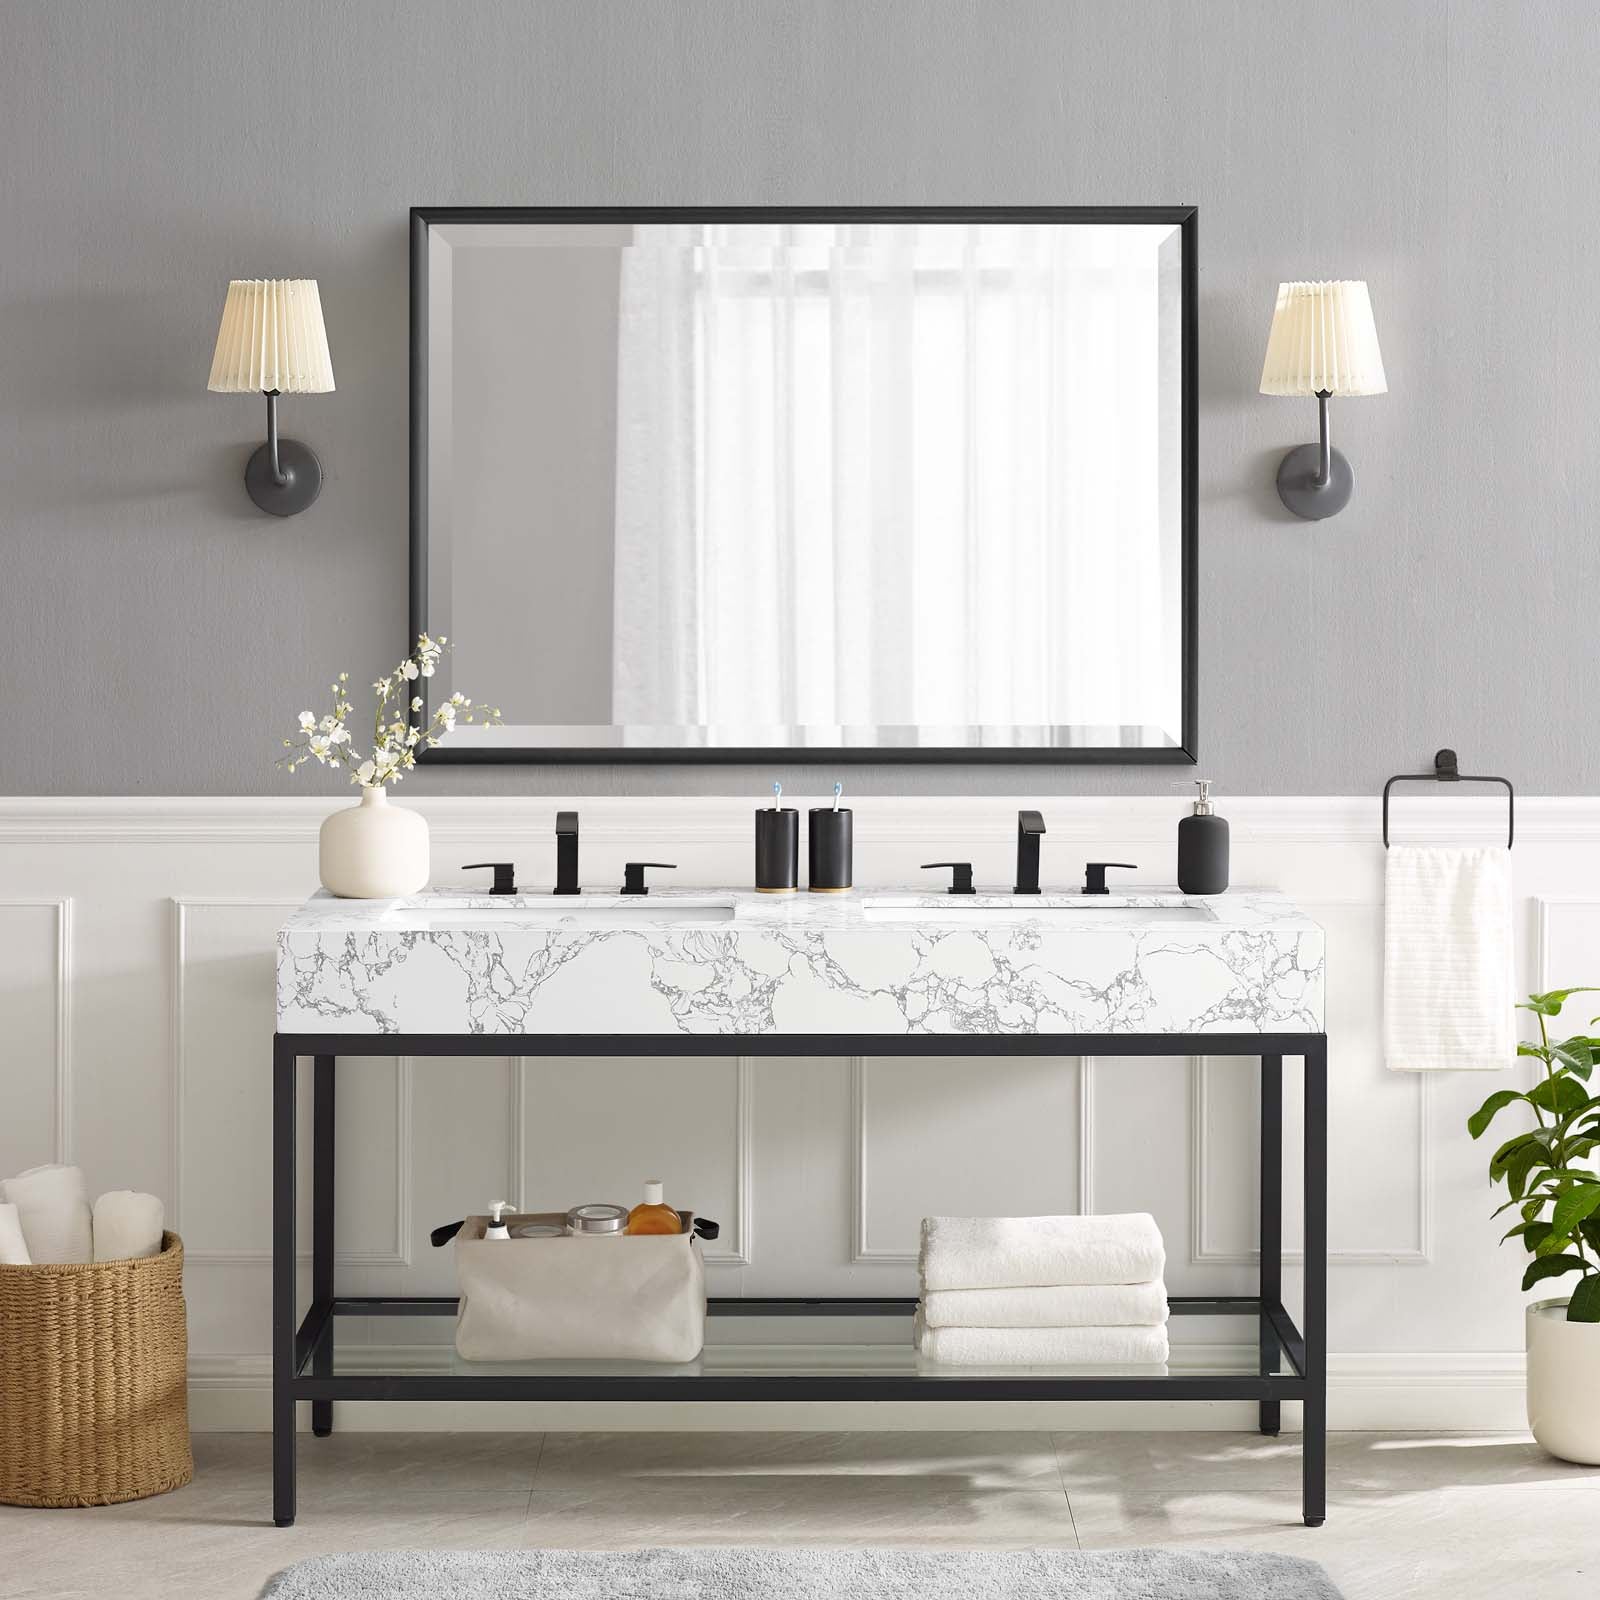 Kingsley 60" Black Stainless Steel Bathroom Vanity - East Shore Modern Home Furnishings